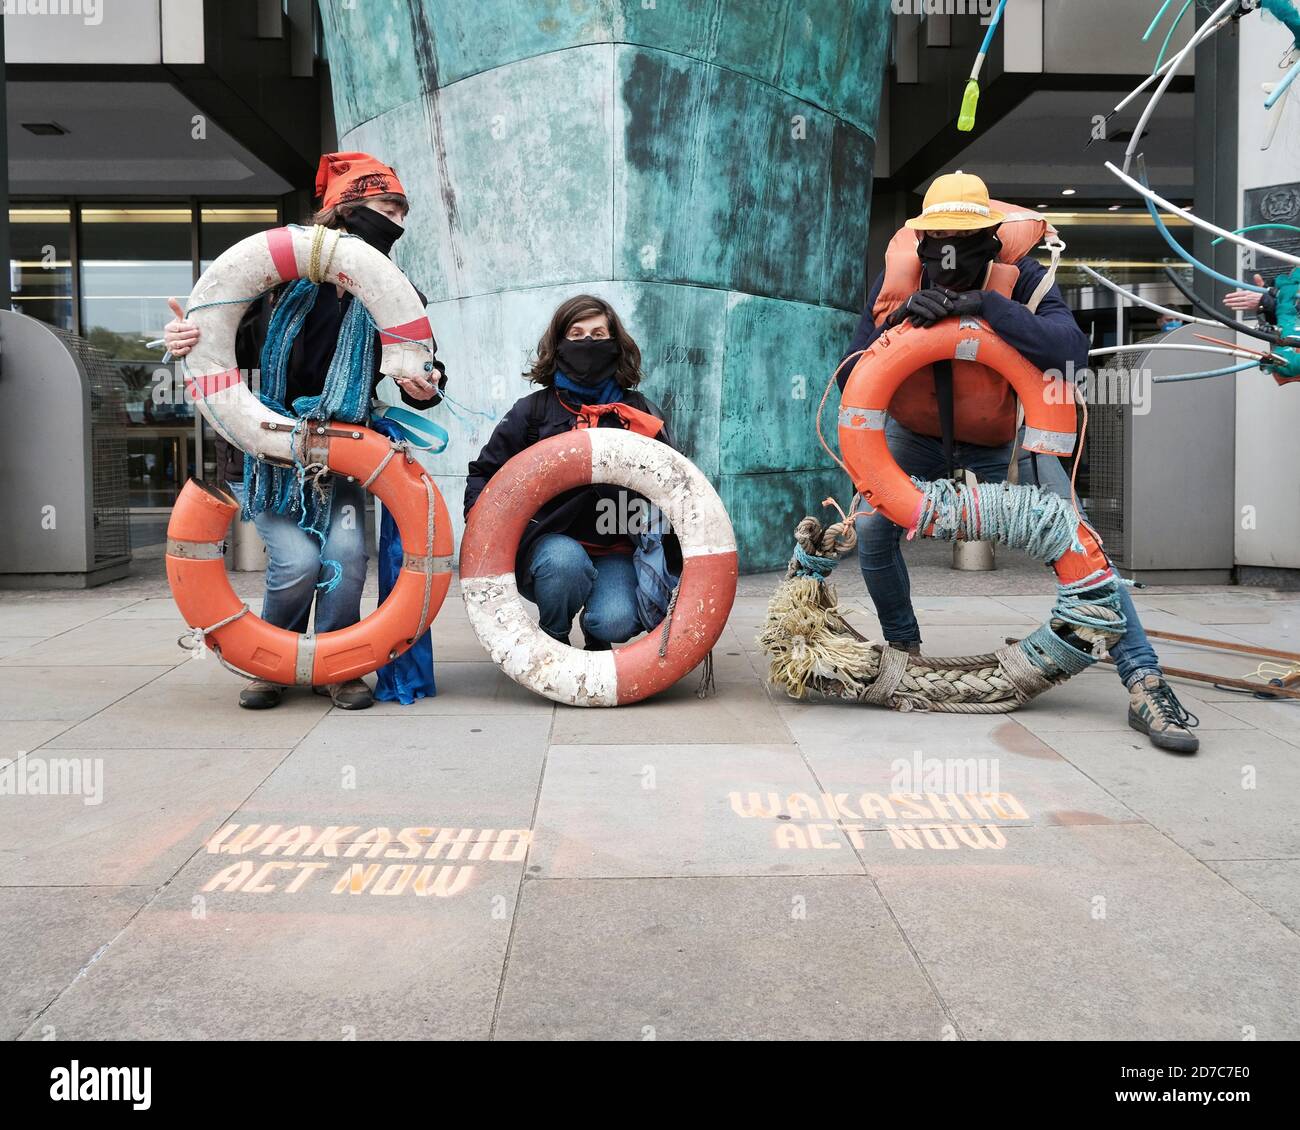 Ocean Rebellion Aktivisten protestieren in London, um auf die Ölkatastrophe von Wakashio und die Nutzung fossiler Brennstoffe in der Schifffahrt aufmerksam zu machen. Stockfoto